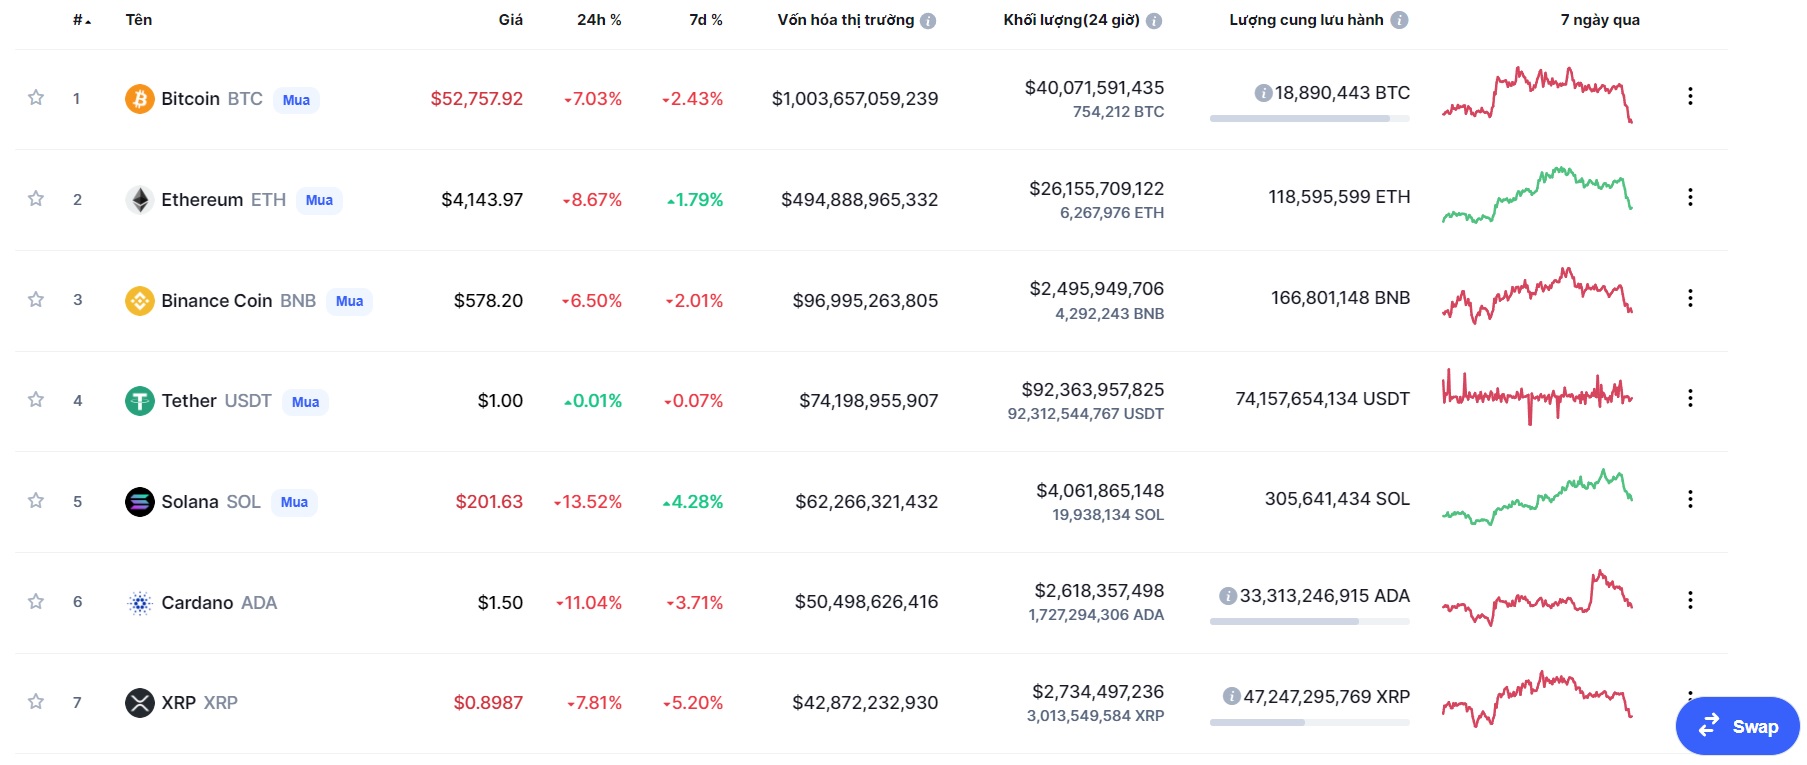 Giá Bitcoin hôm nay 4/12: Màu đỏ bao phủ, thị trường giảm mạnh - Ảnh 1